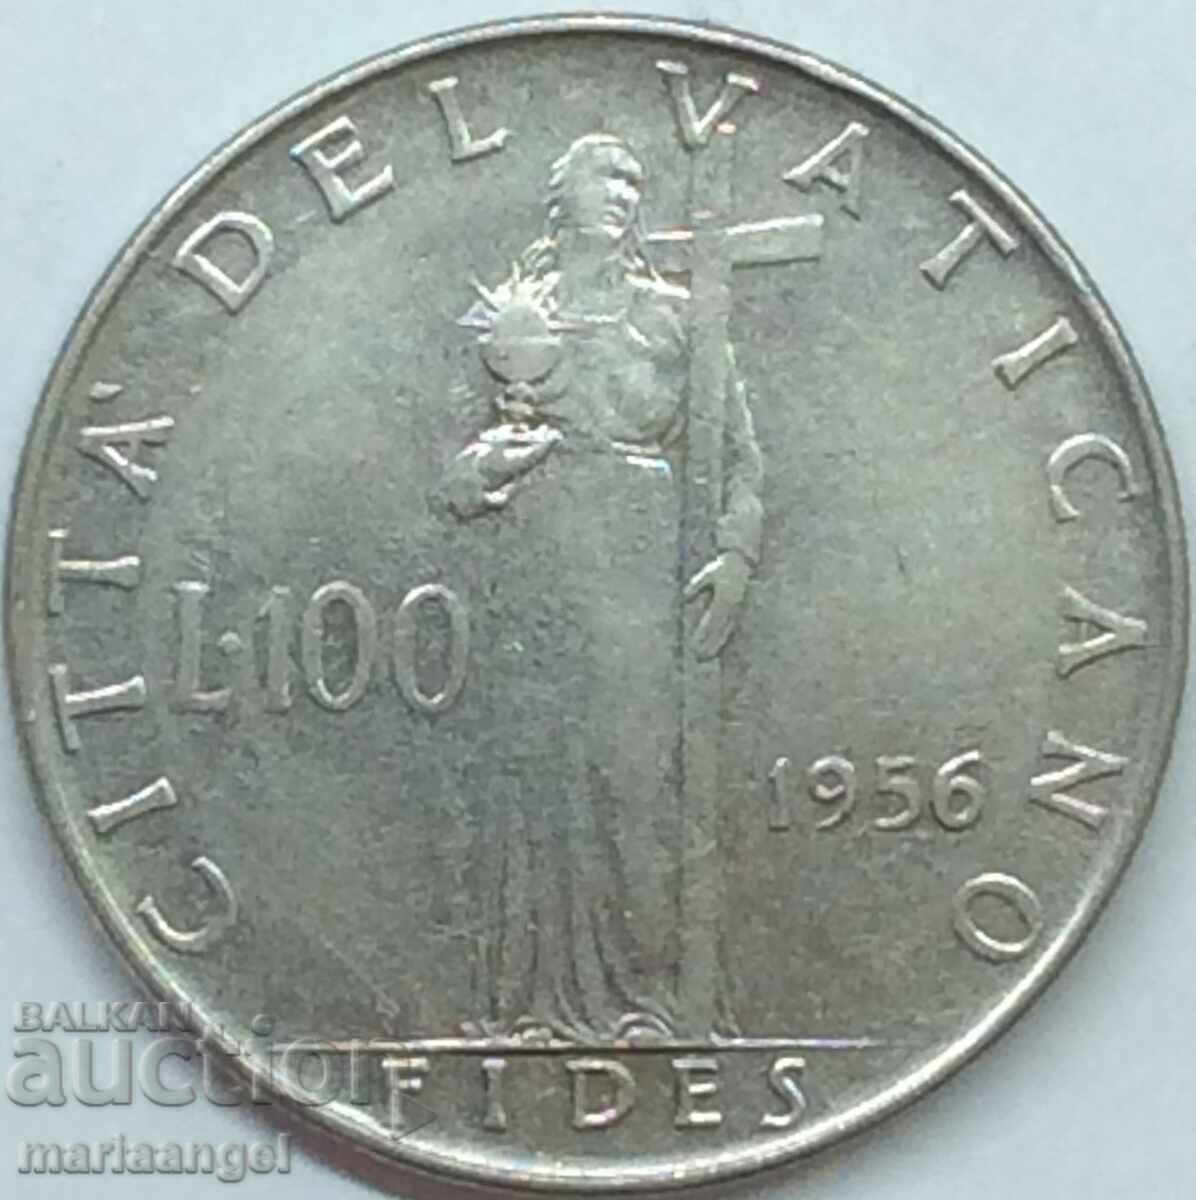 100 lire 1956 Vatican